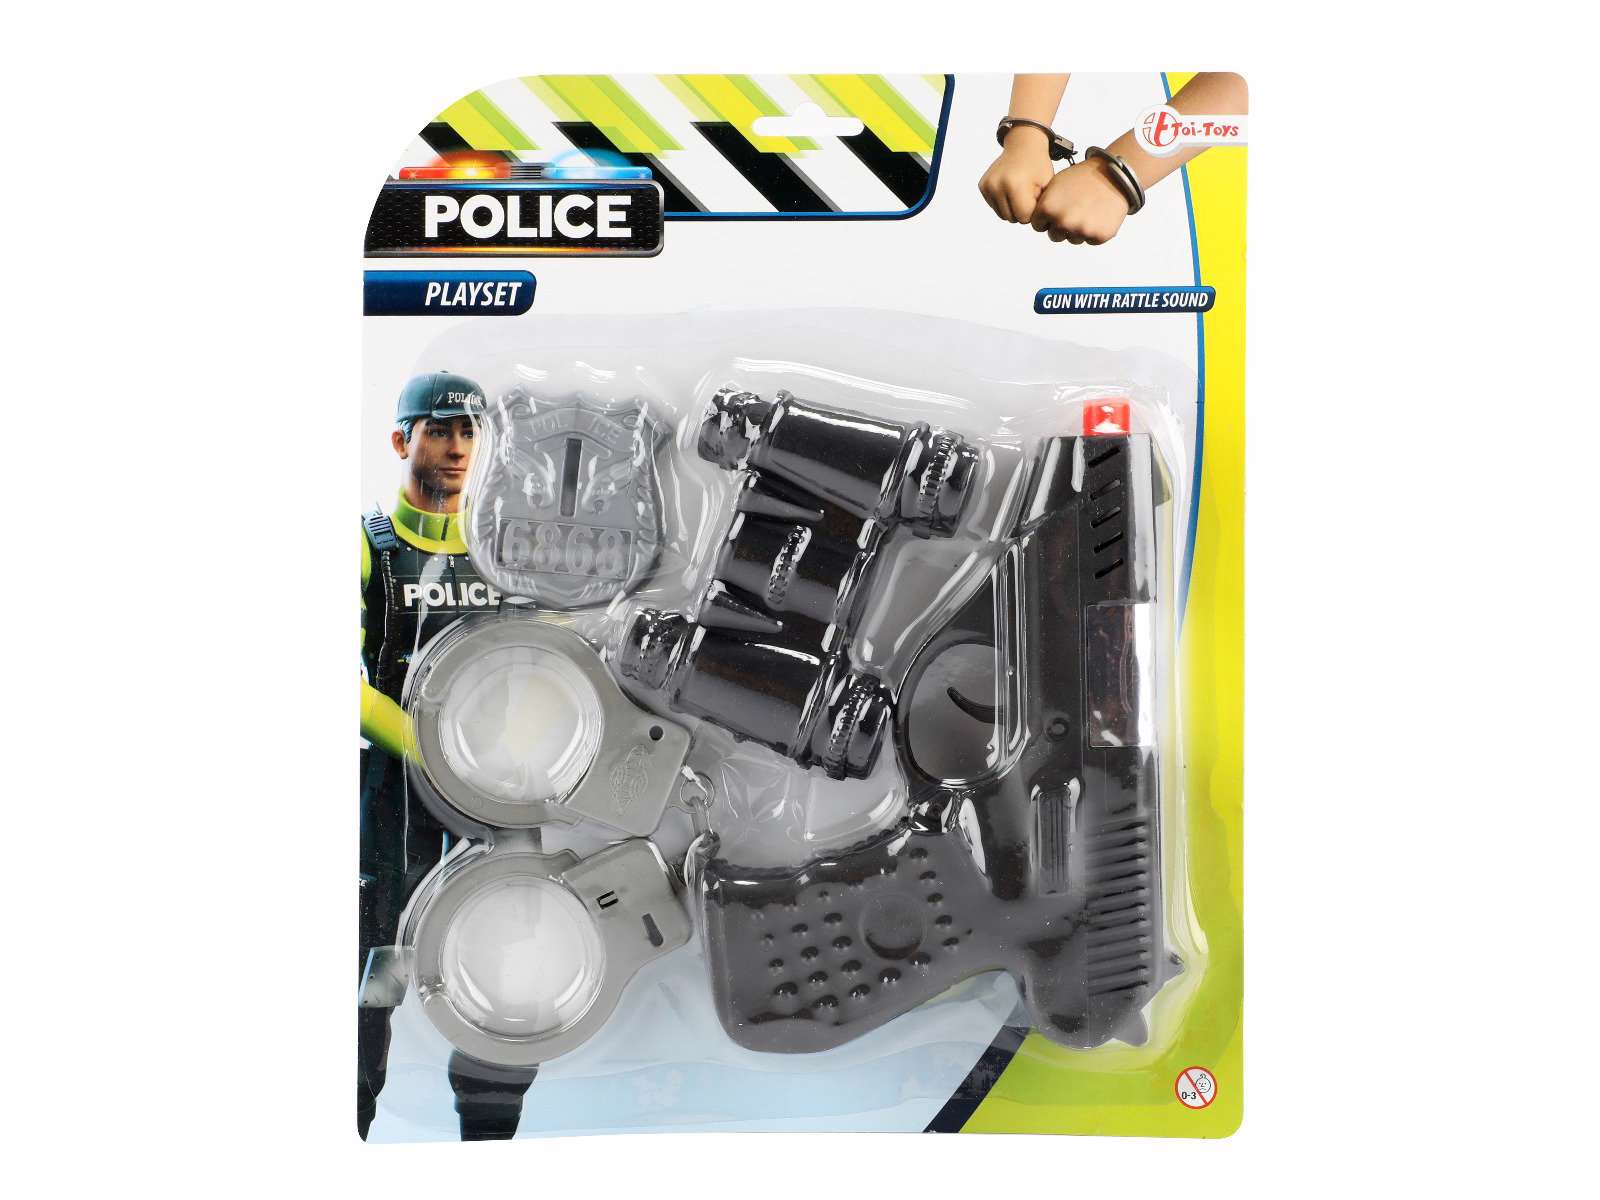 Polizei Spielset mit 4 Teilen. Spielzeugpistole, Handschellen, Schild und Fernglas